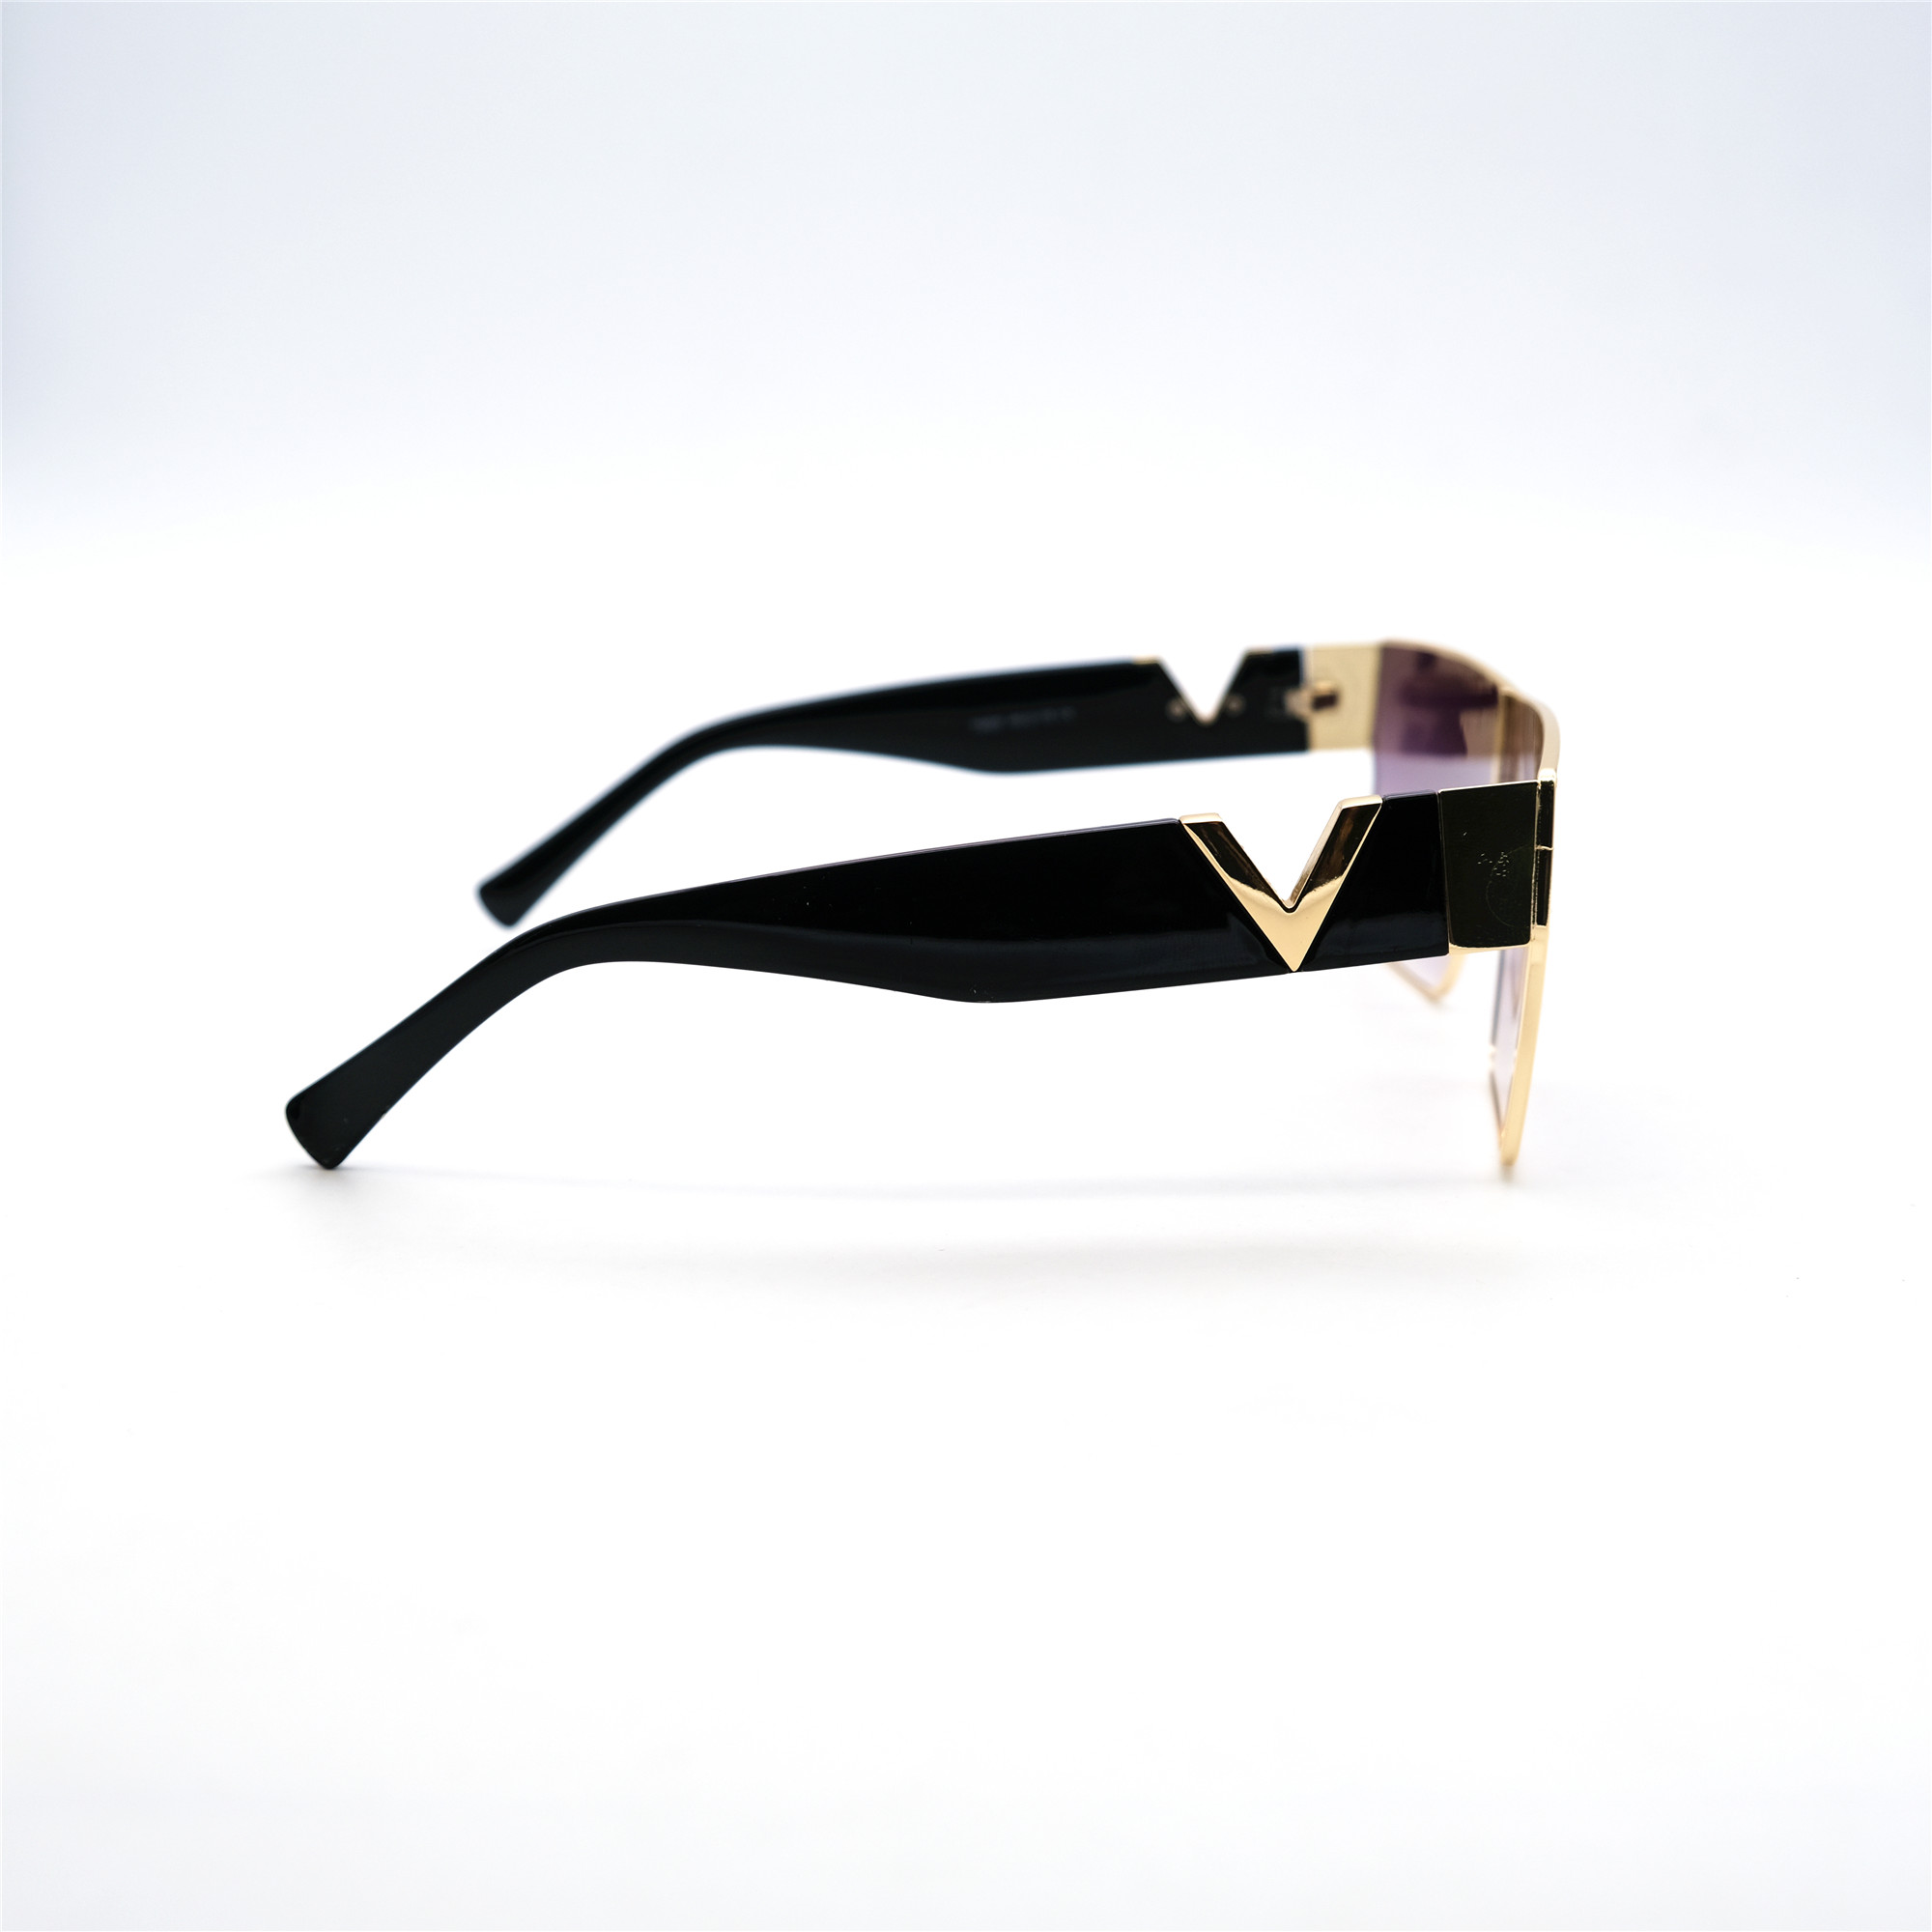  Солнцезащитные очки картинка Женские Caipai  Классический 7865-C1 